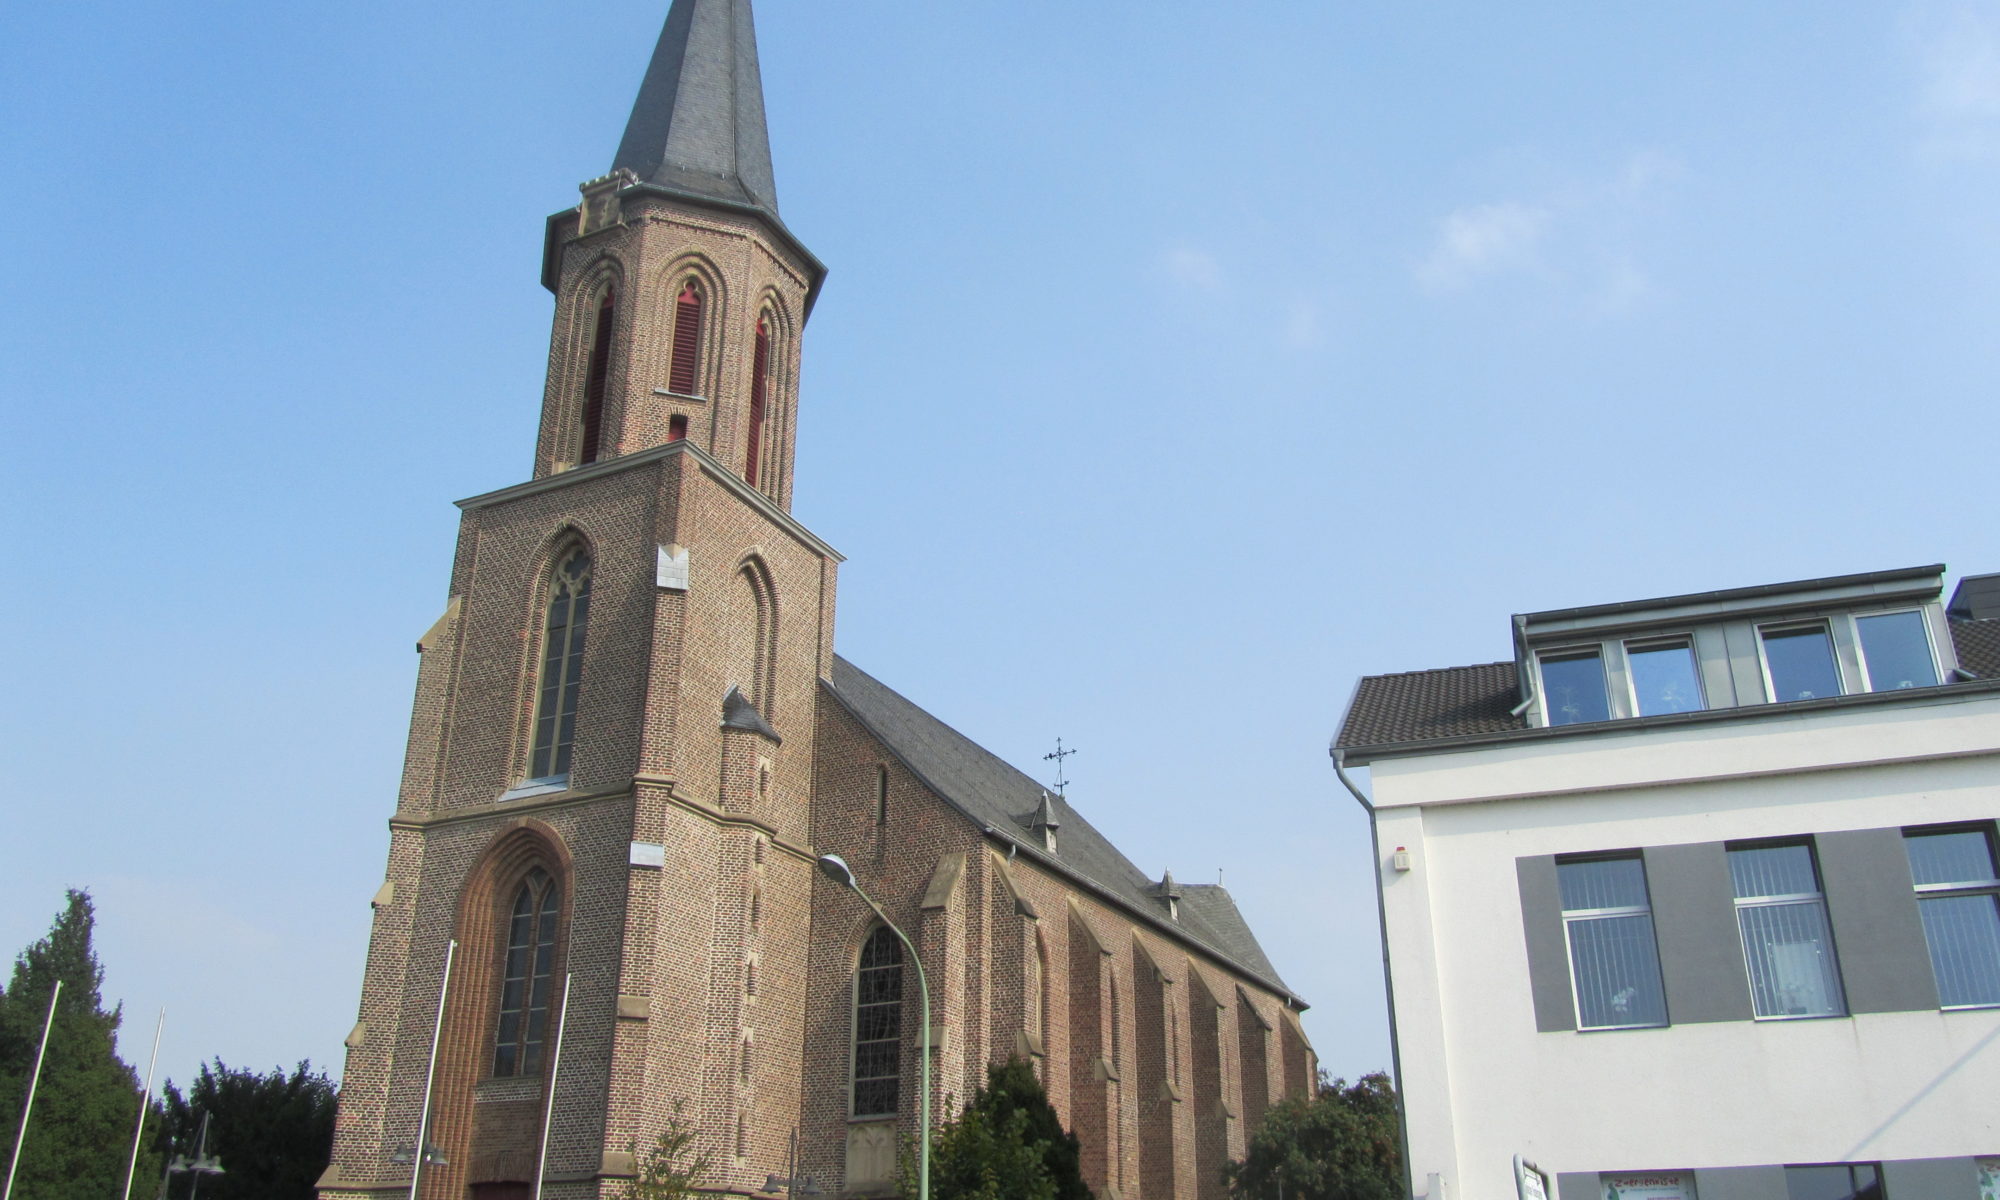 St. Johannes Evangelist in Gürzenich